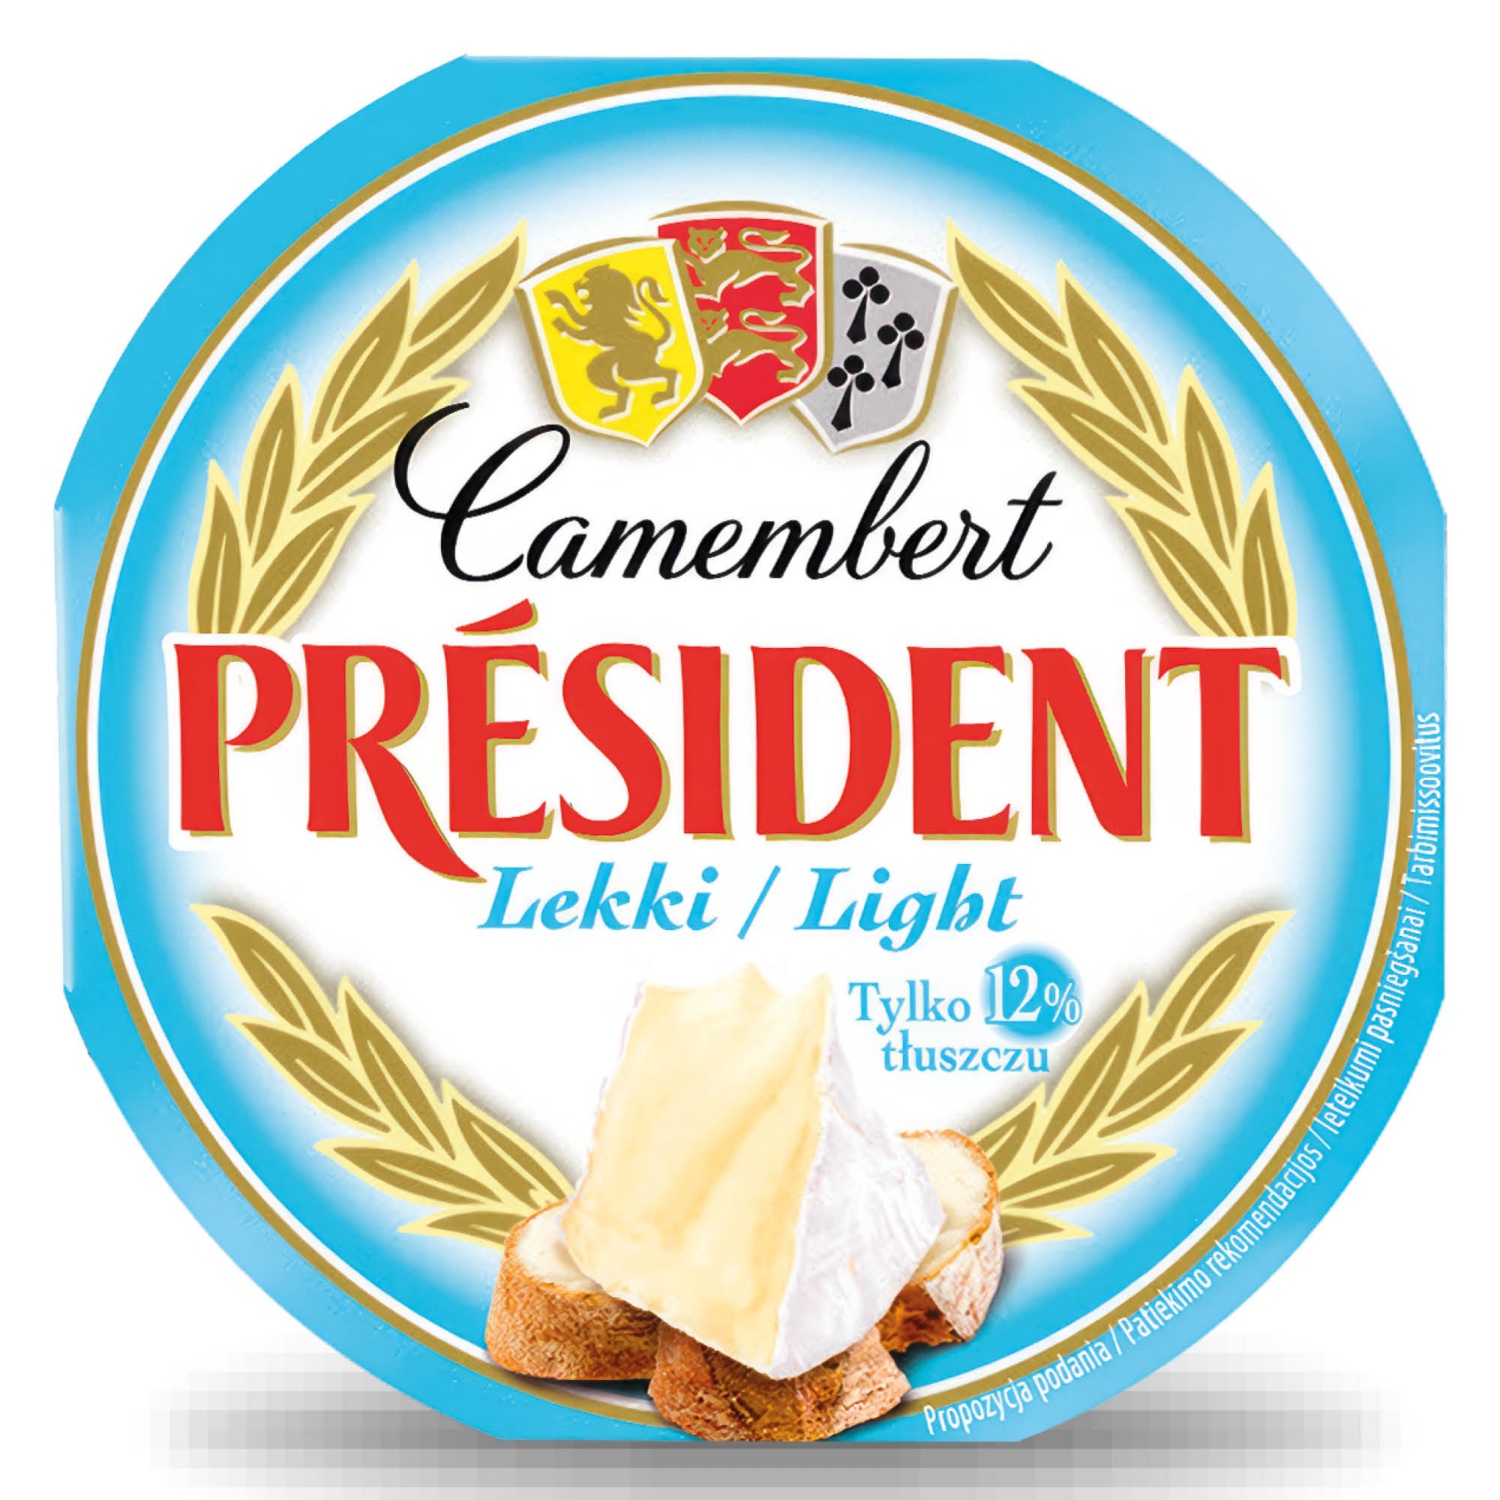 PRÉSIDENT Camembert, 120 g, light